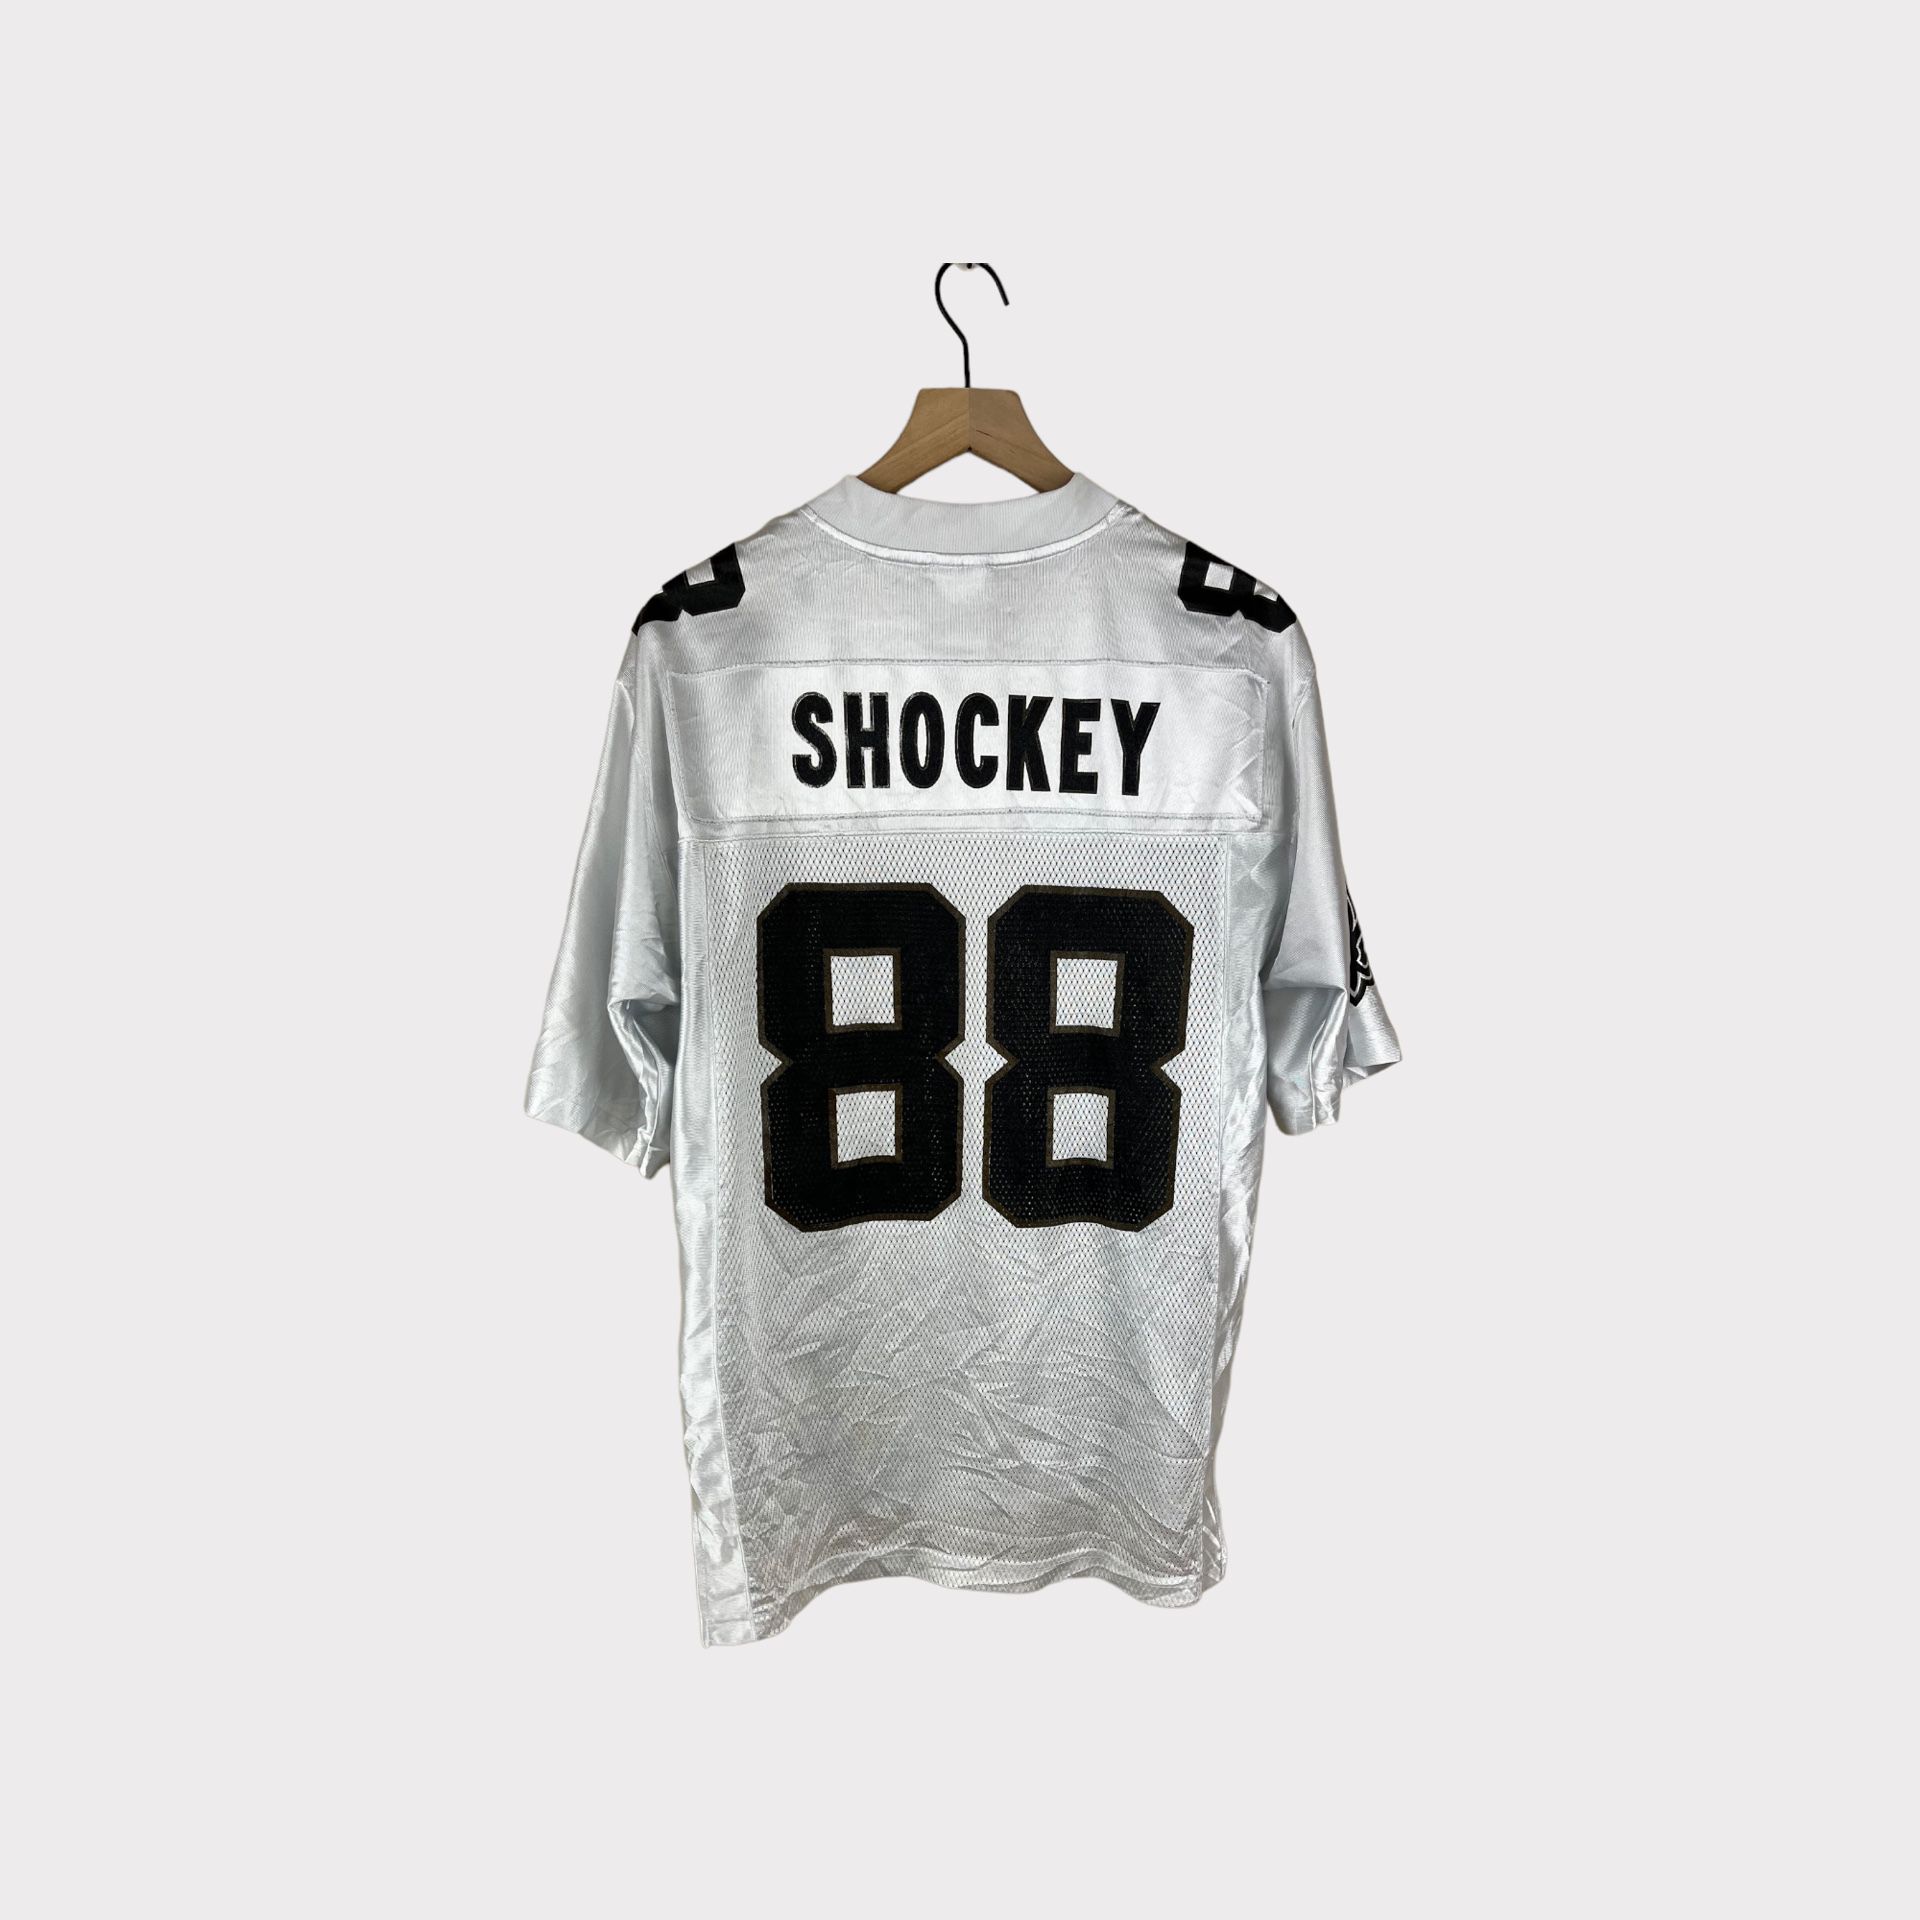 2009 New Orleans Saints Jeremy Shockey #88 NFL Reebok Jersey 